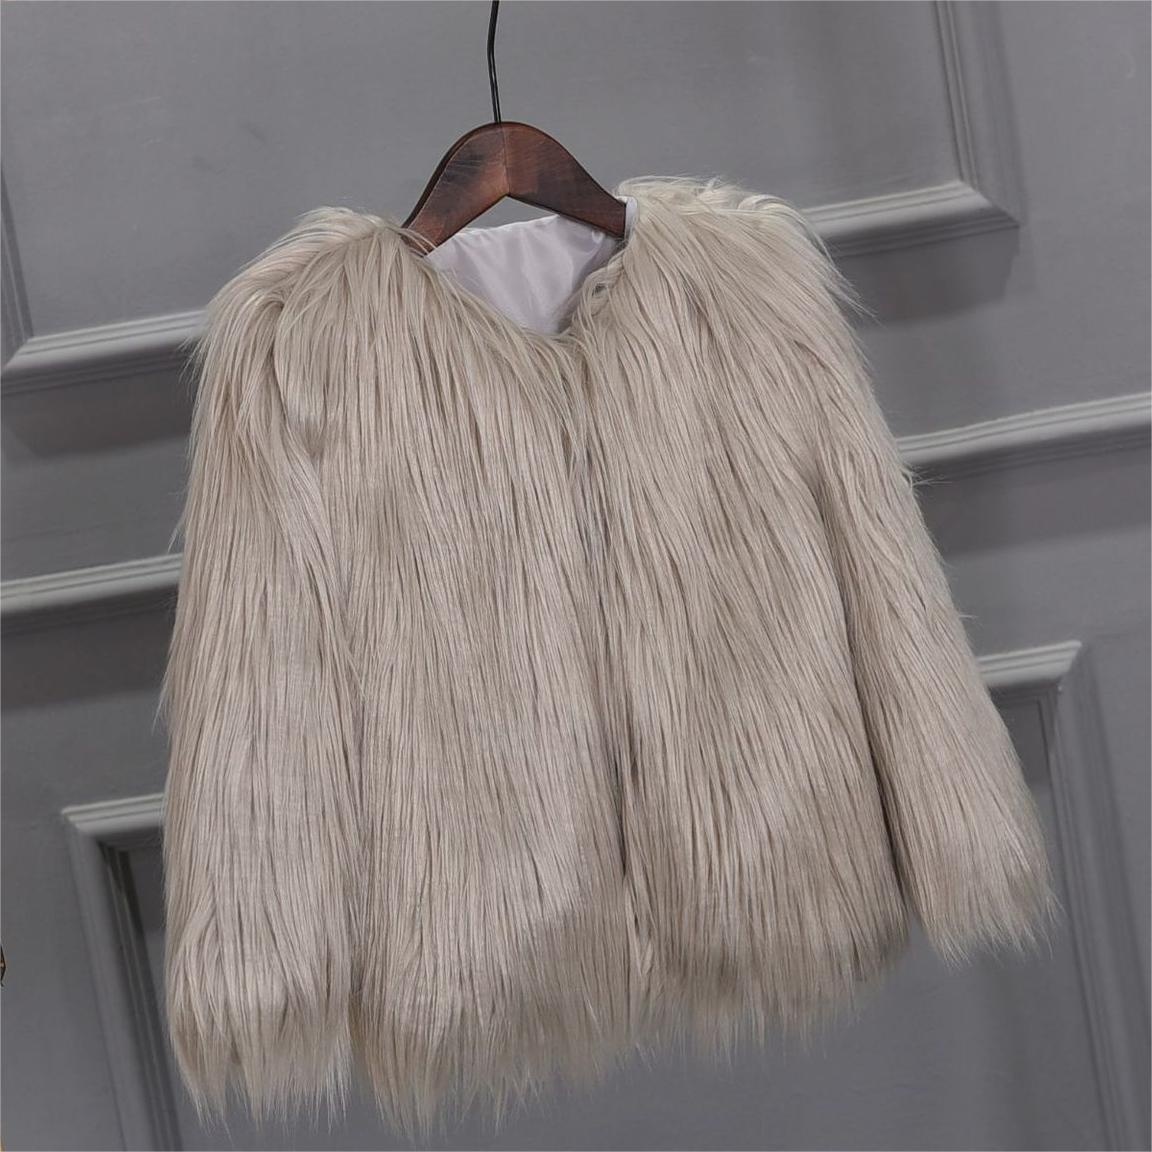 γυναικεία γυναικεία παλτό προσαρμοσμένα σε μέγεθος συνήθειας μέτρια χειμωνιάτικα μπουφάν μακριά μαλλιά αφράτα γυναικεία παλτό από ψεύτικη γούνα